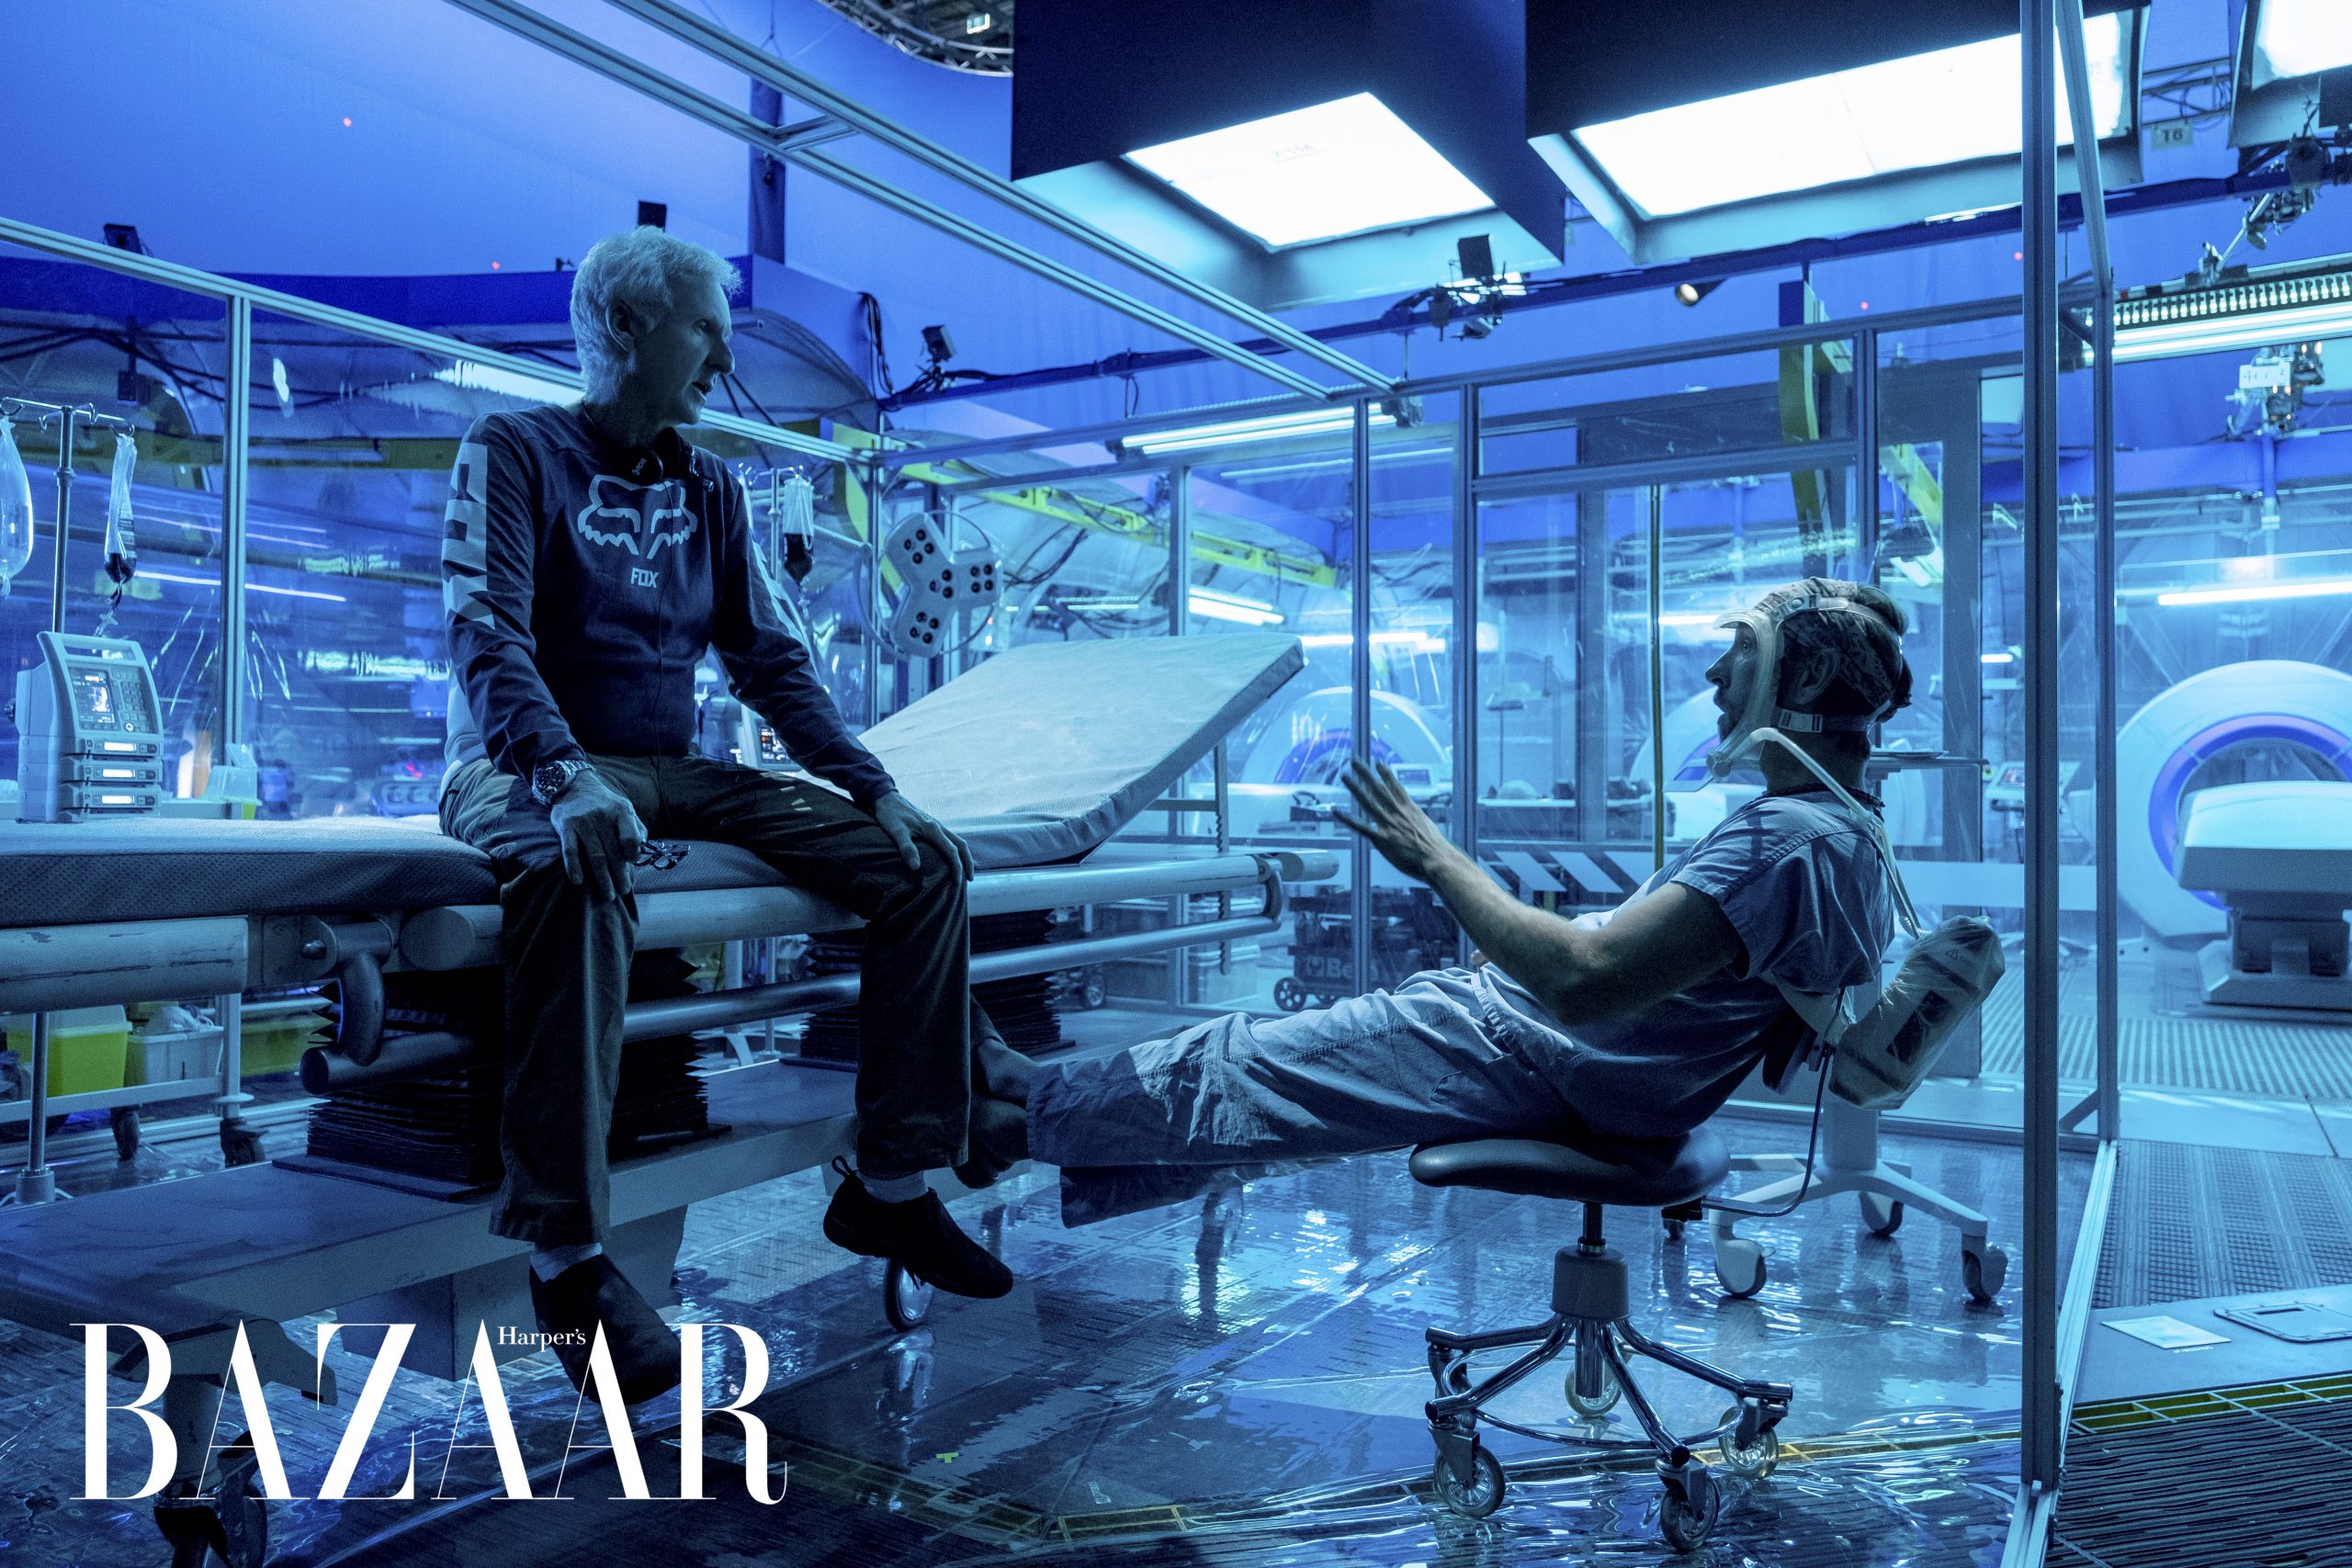 Harper's Bazaar_phim Avatar 2 The Way Of Water_01